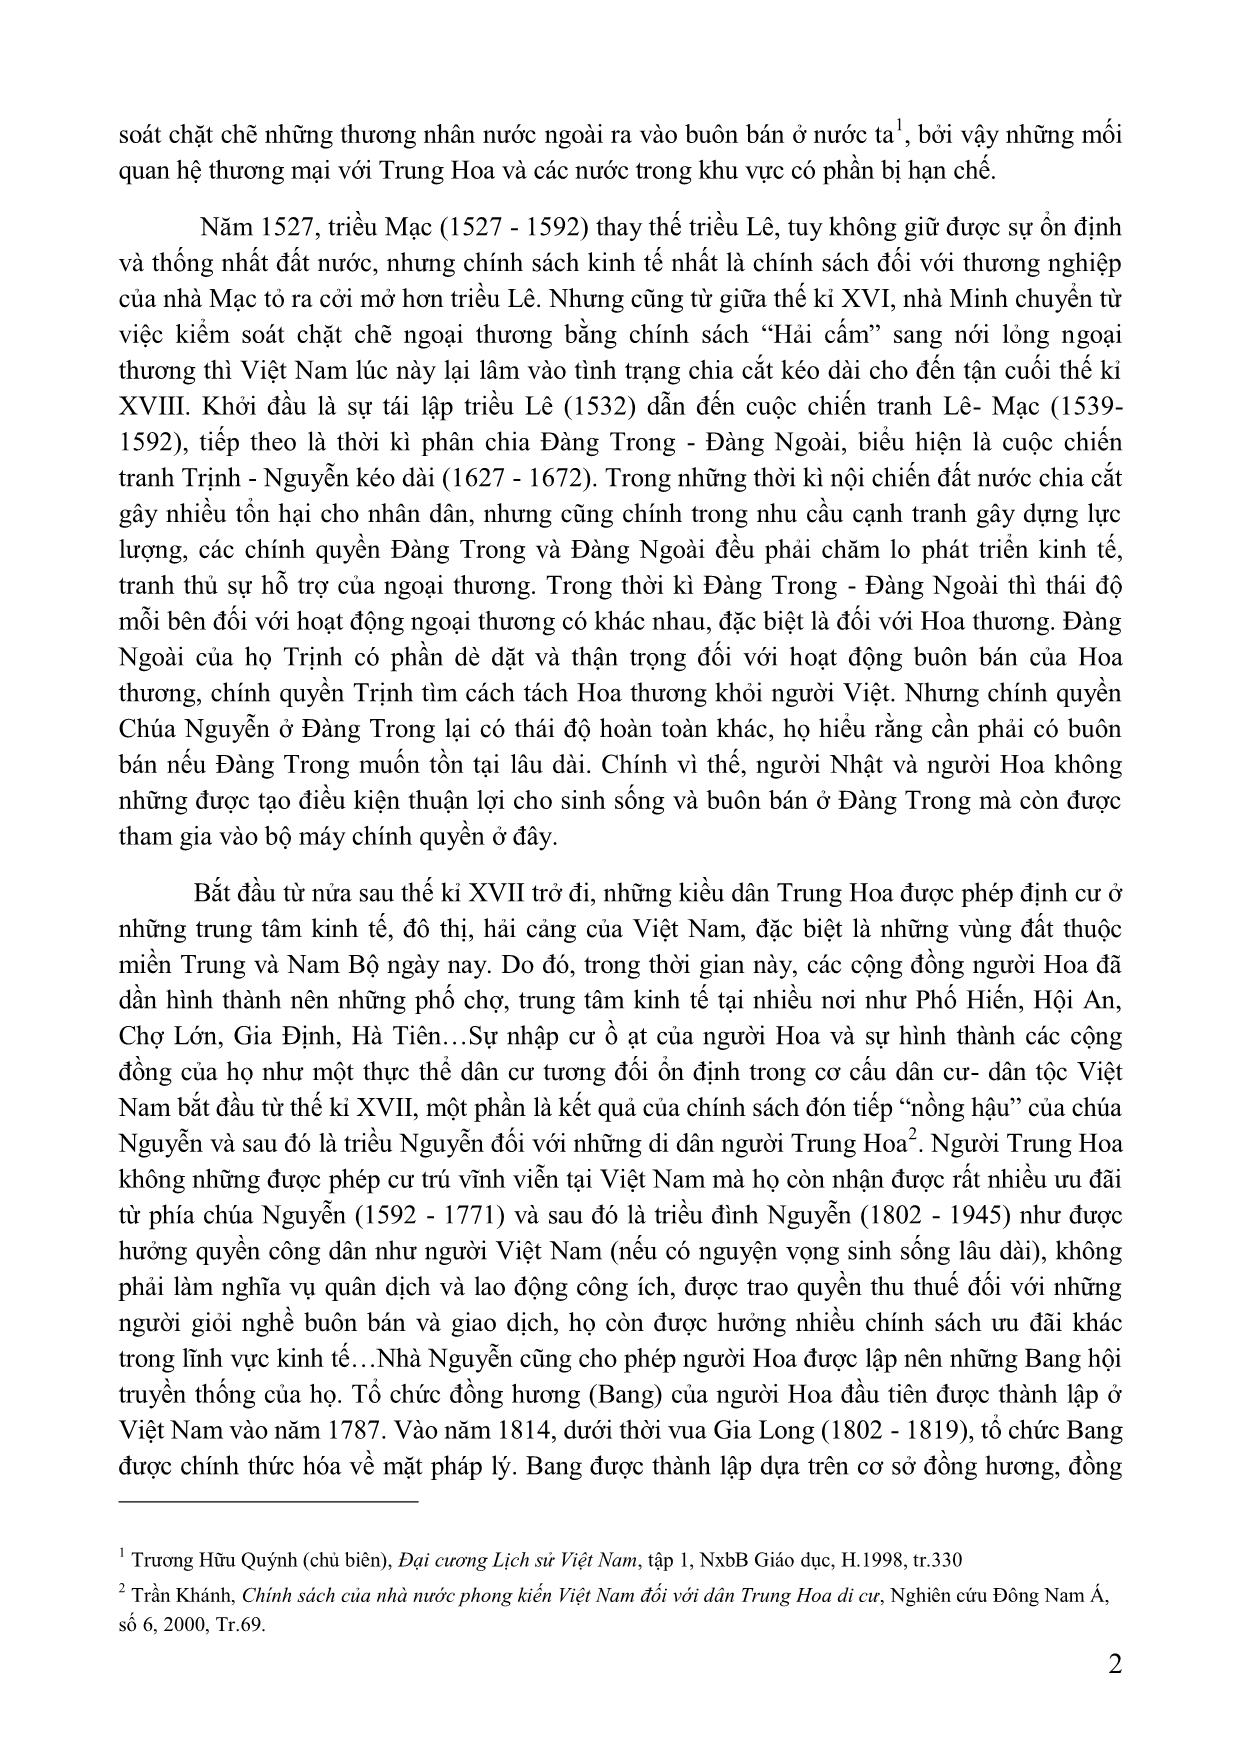 Vai trò của người hoa trong việc hình thành và phát triển các đô thị ở trung và Nam Bộ Việt Nam (thế kỉ XVII-XIX) trang 2